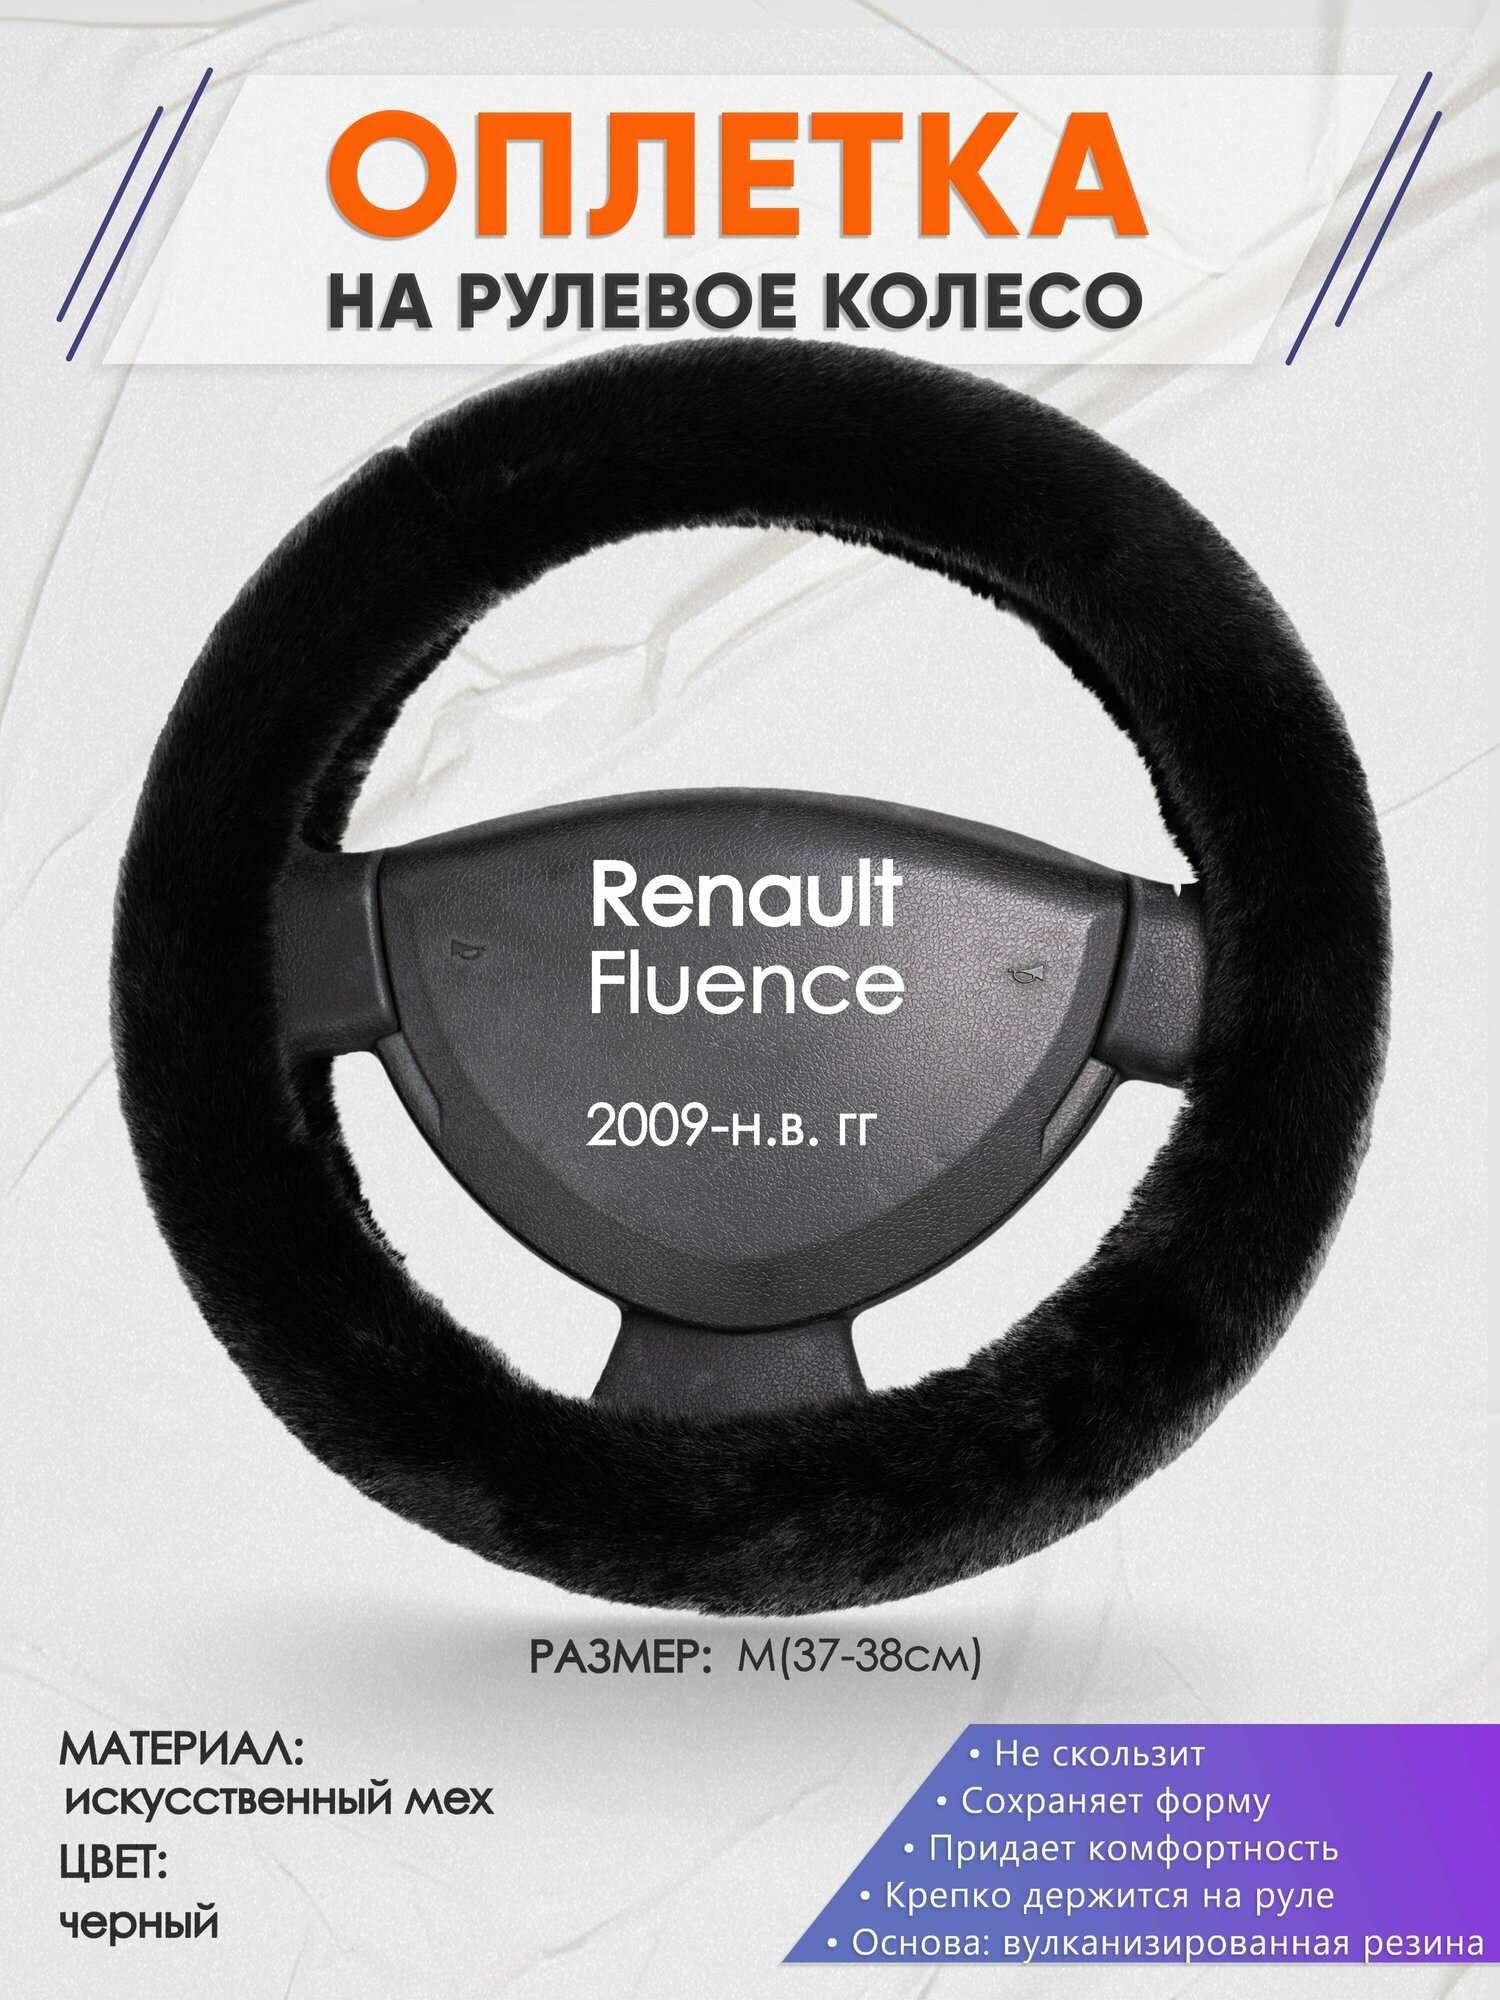 Оплетка на руль для Renault Fluence (Рено Флюенс) 2009-н. в, M(37-38см), Искусственный мех 40